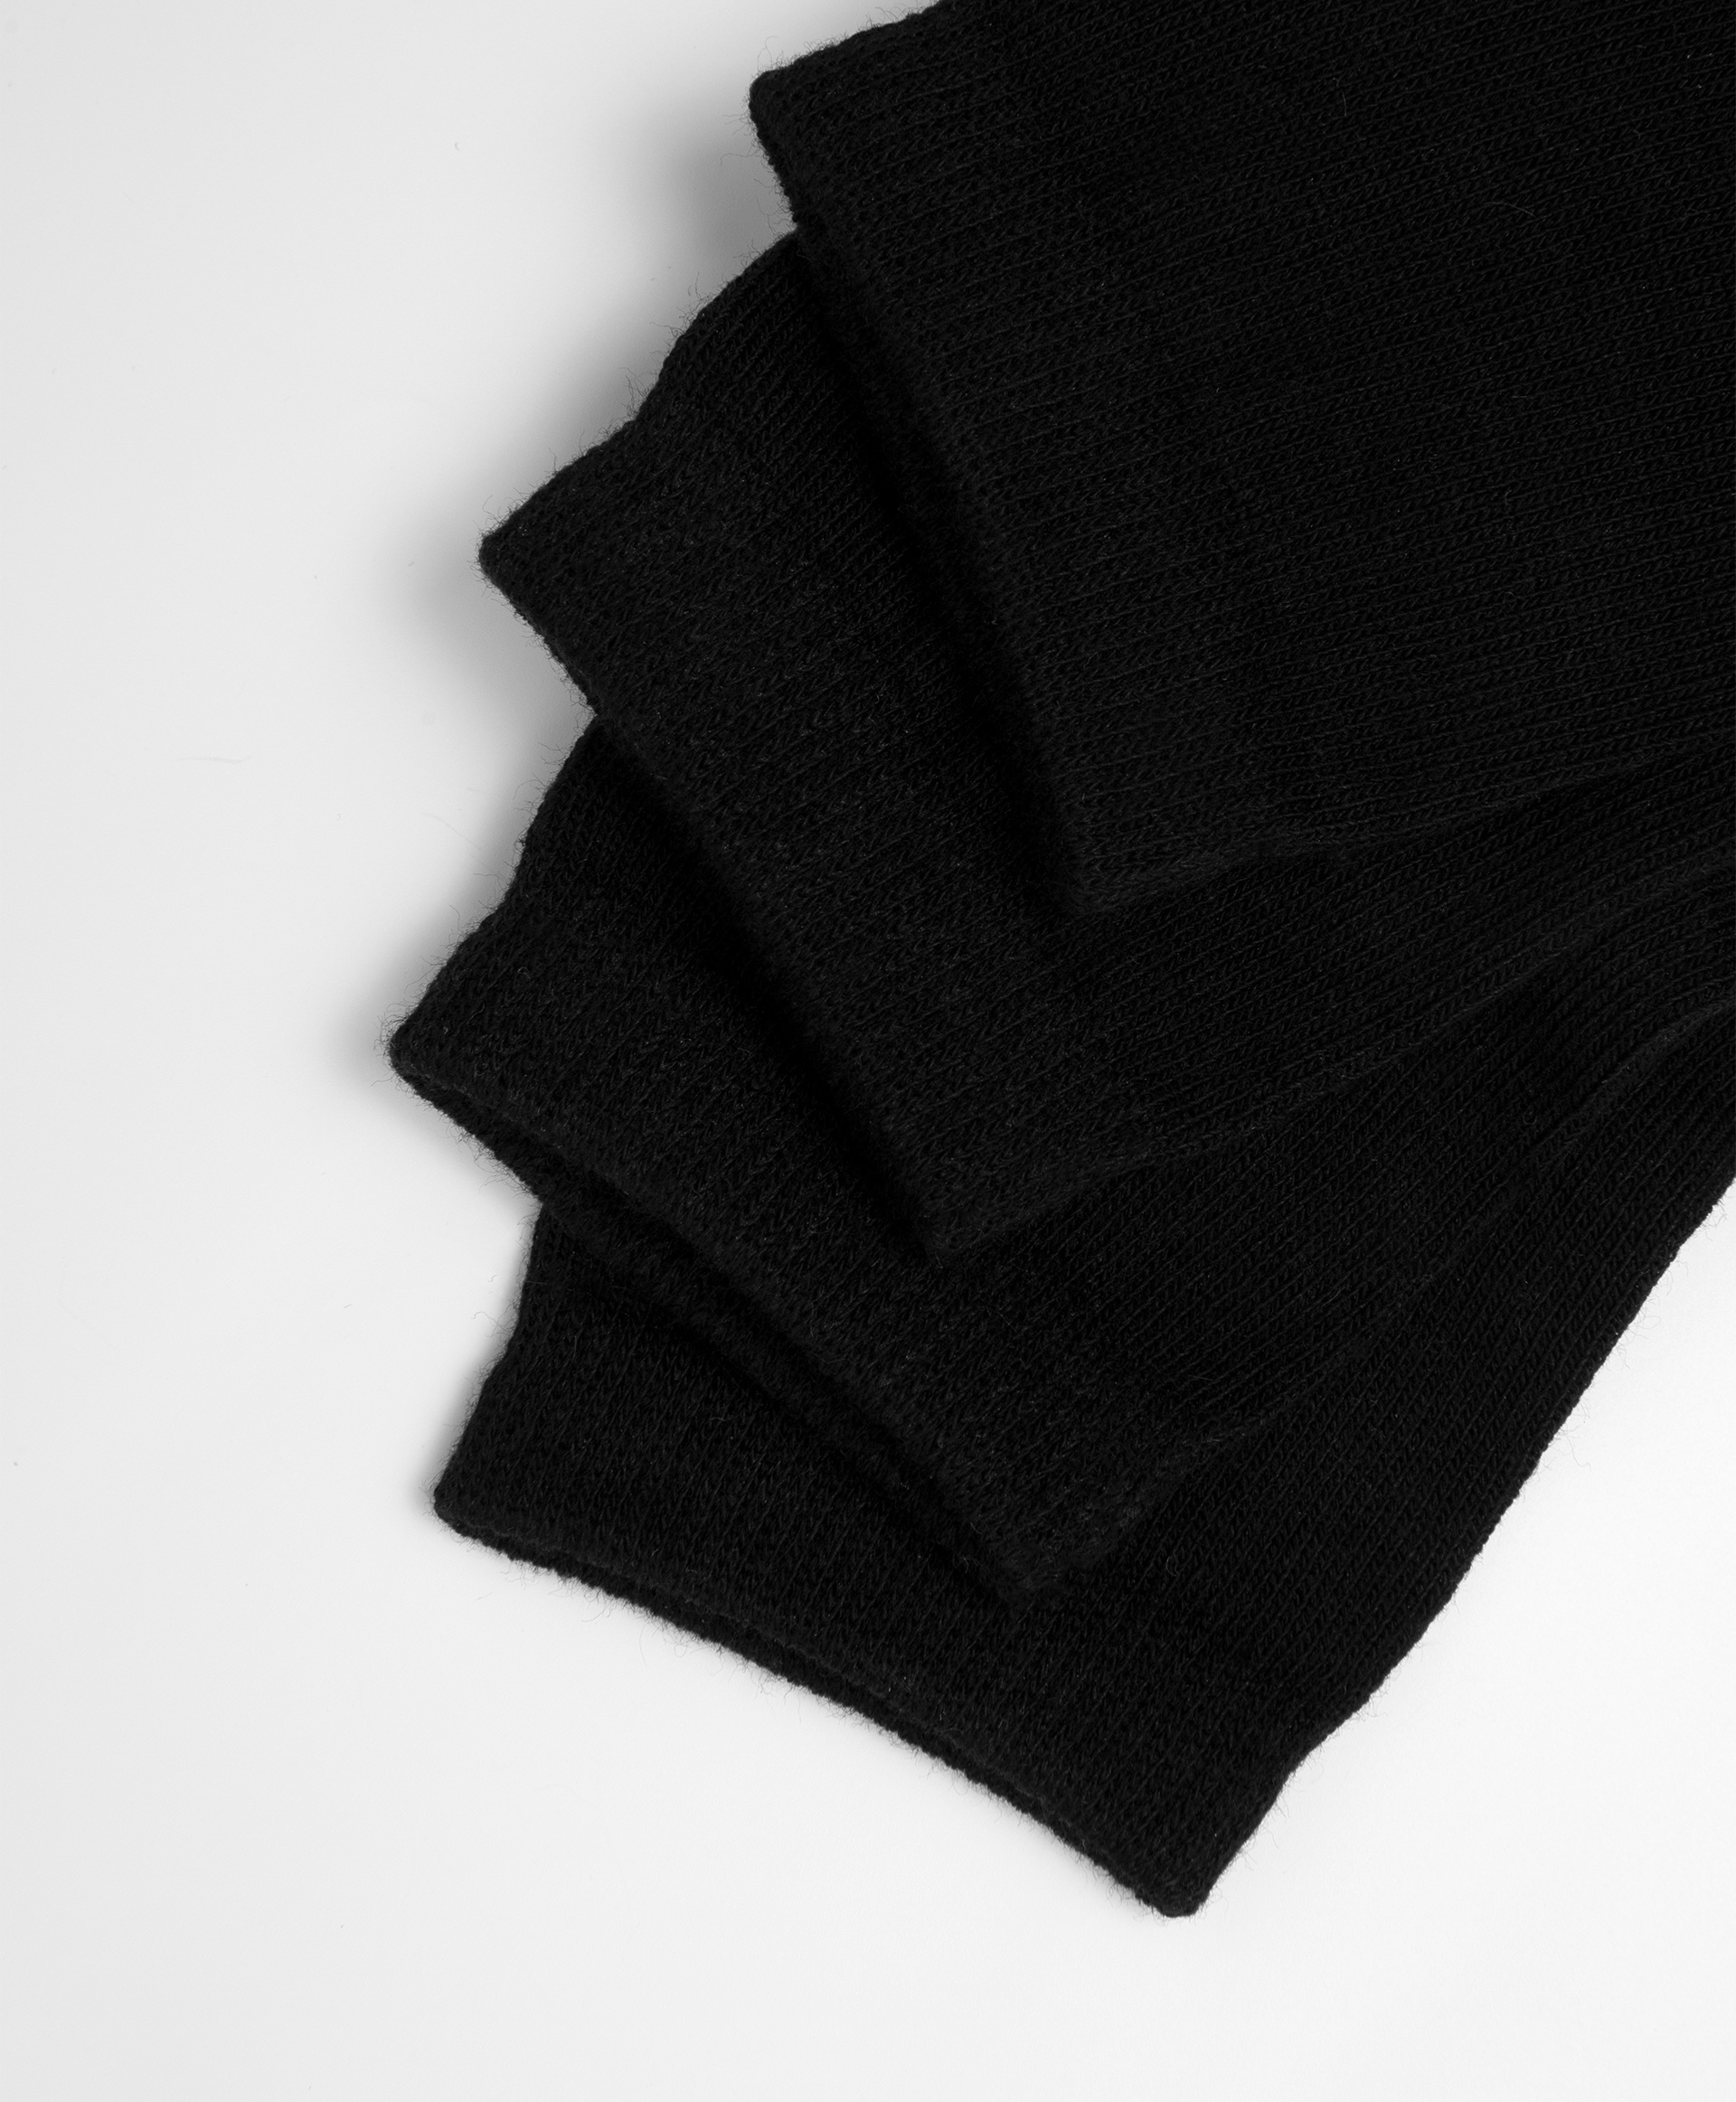 Носки хлопковые черные Gulliver 20000UC8504, размер 22-24, цвет черный - фото 2